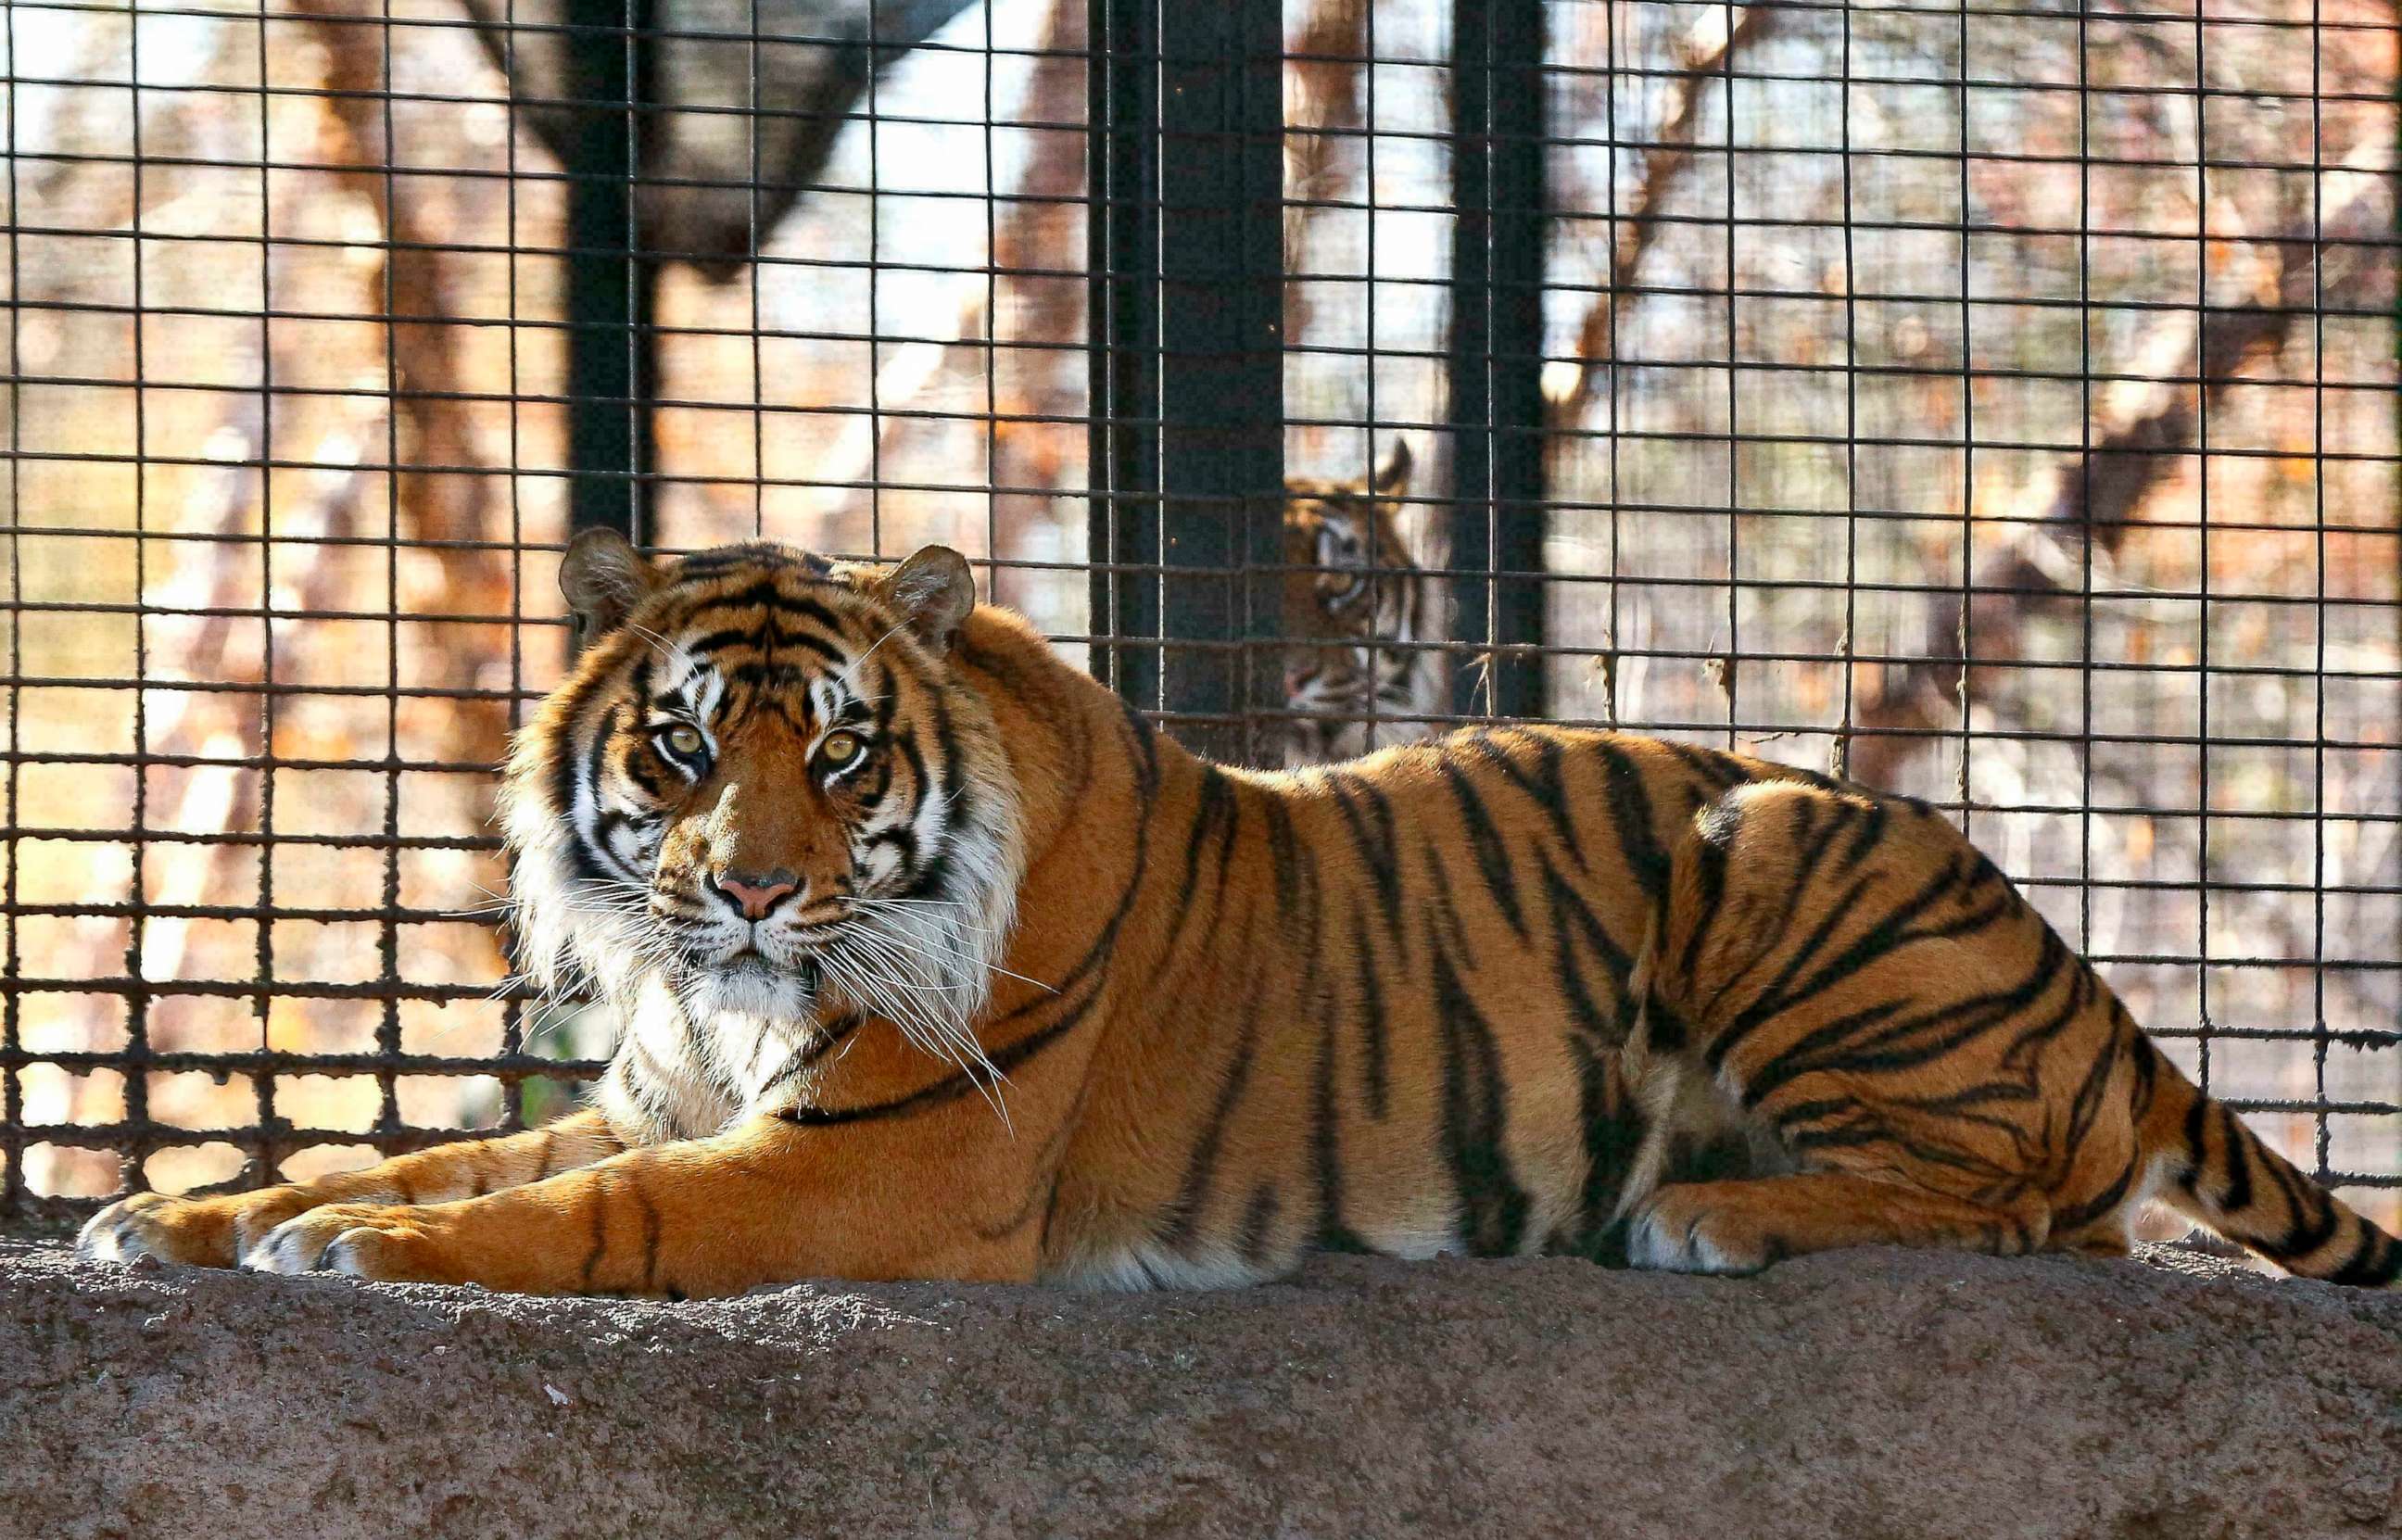 PHOTO: Sanjiv, a Sumatran tiger at the Topeka Zoo in Topeka, Kansas.